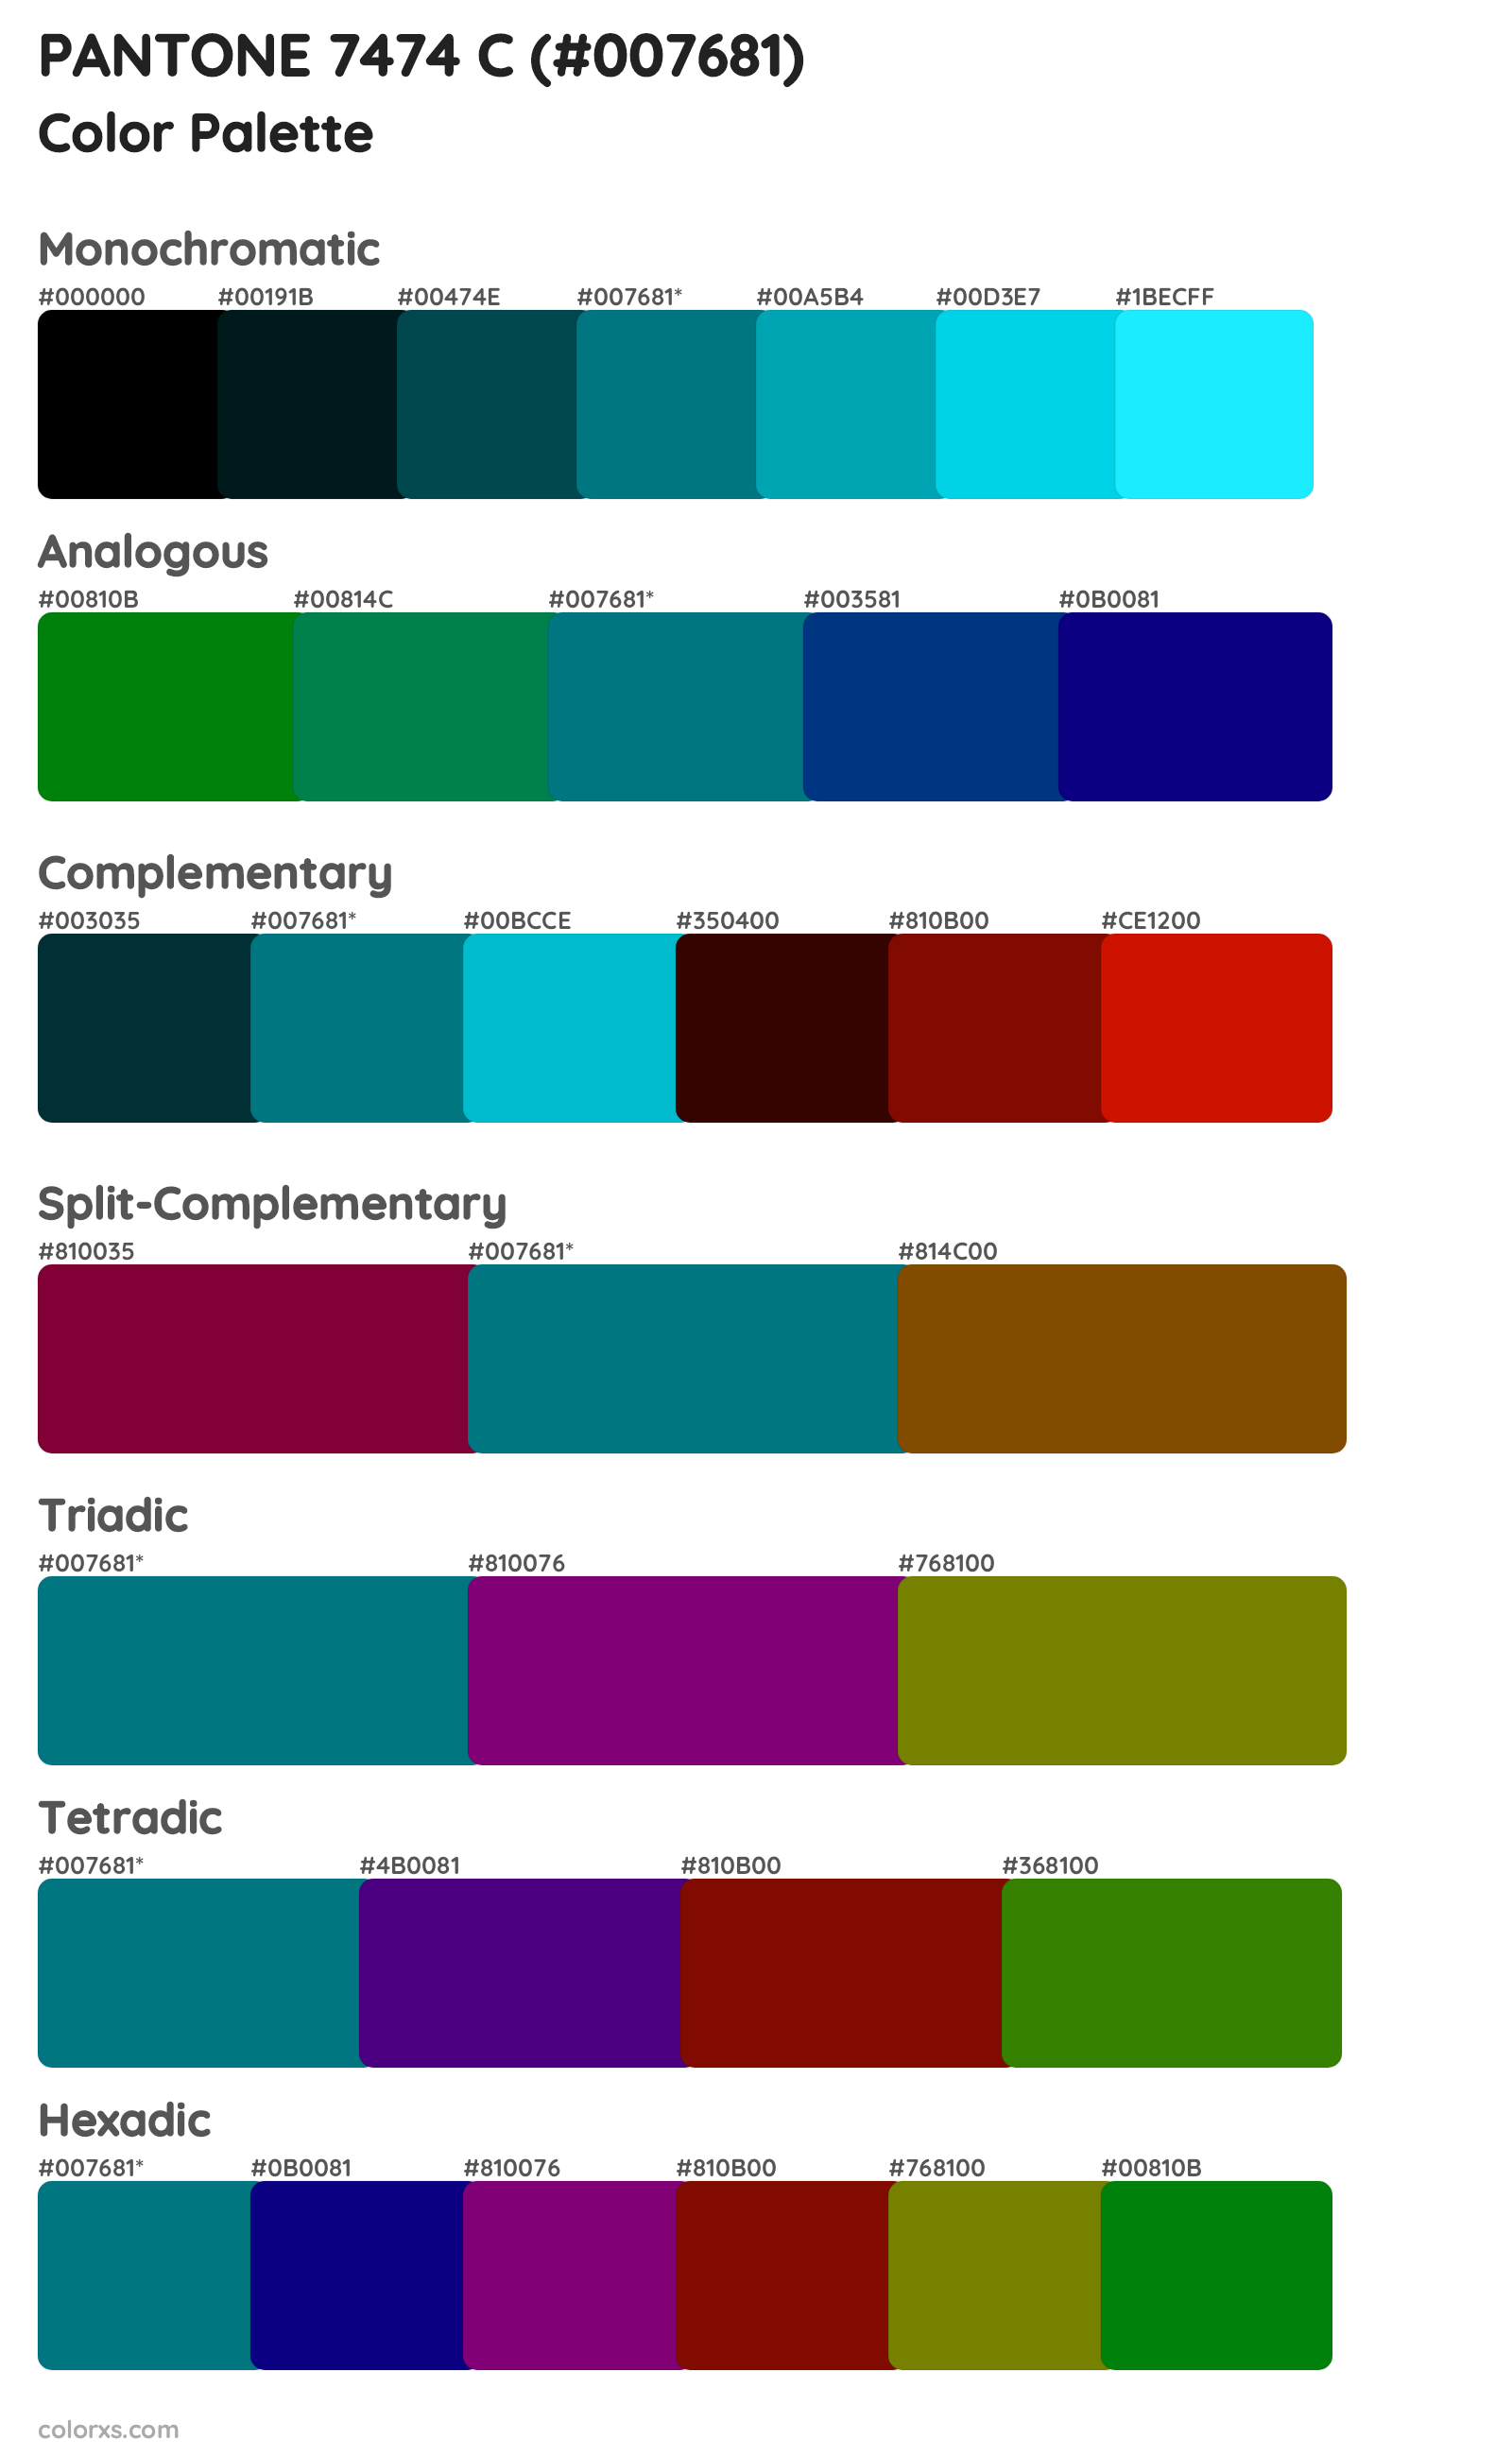 PANTONE 7474 C Color Scheme Palettes